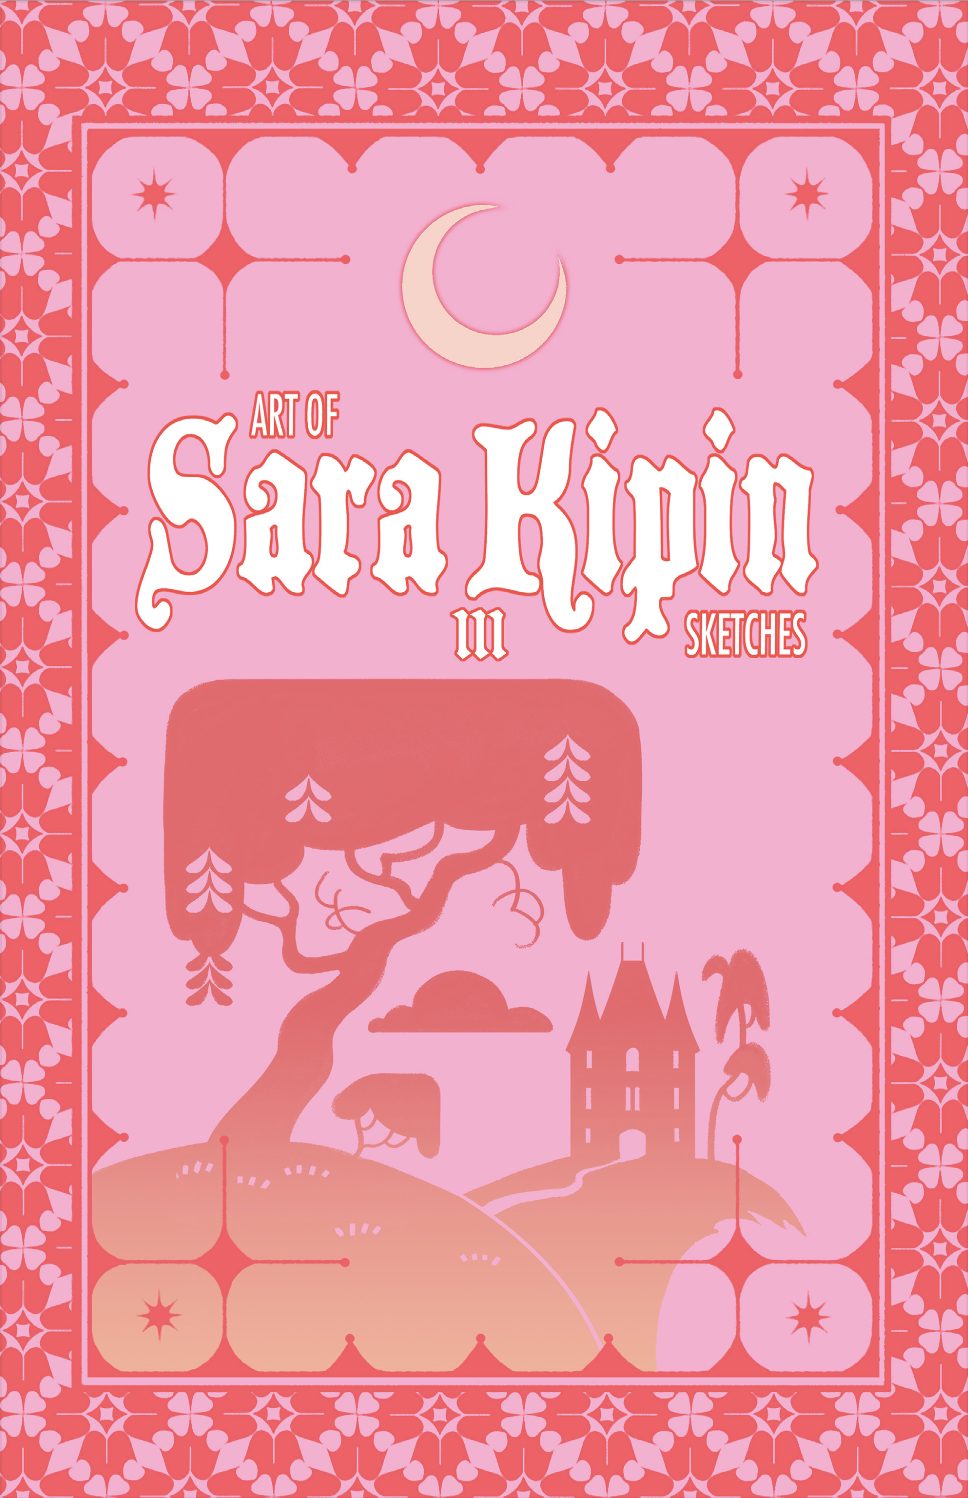 Art of Sara Kipin- Sketches III